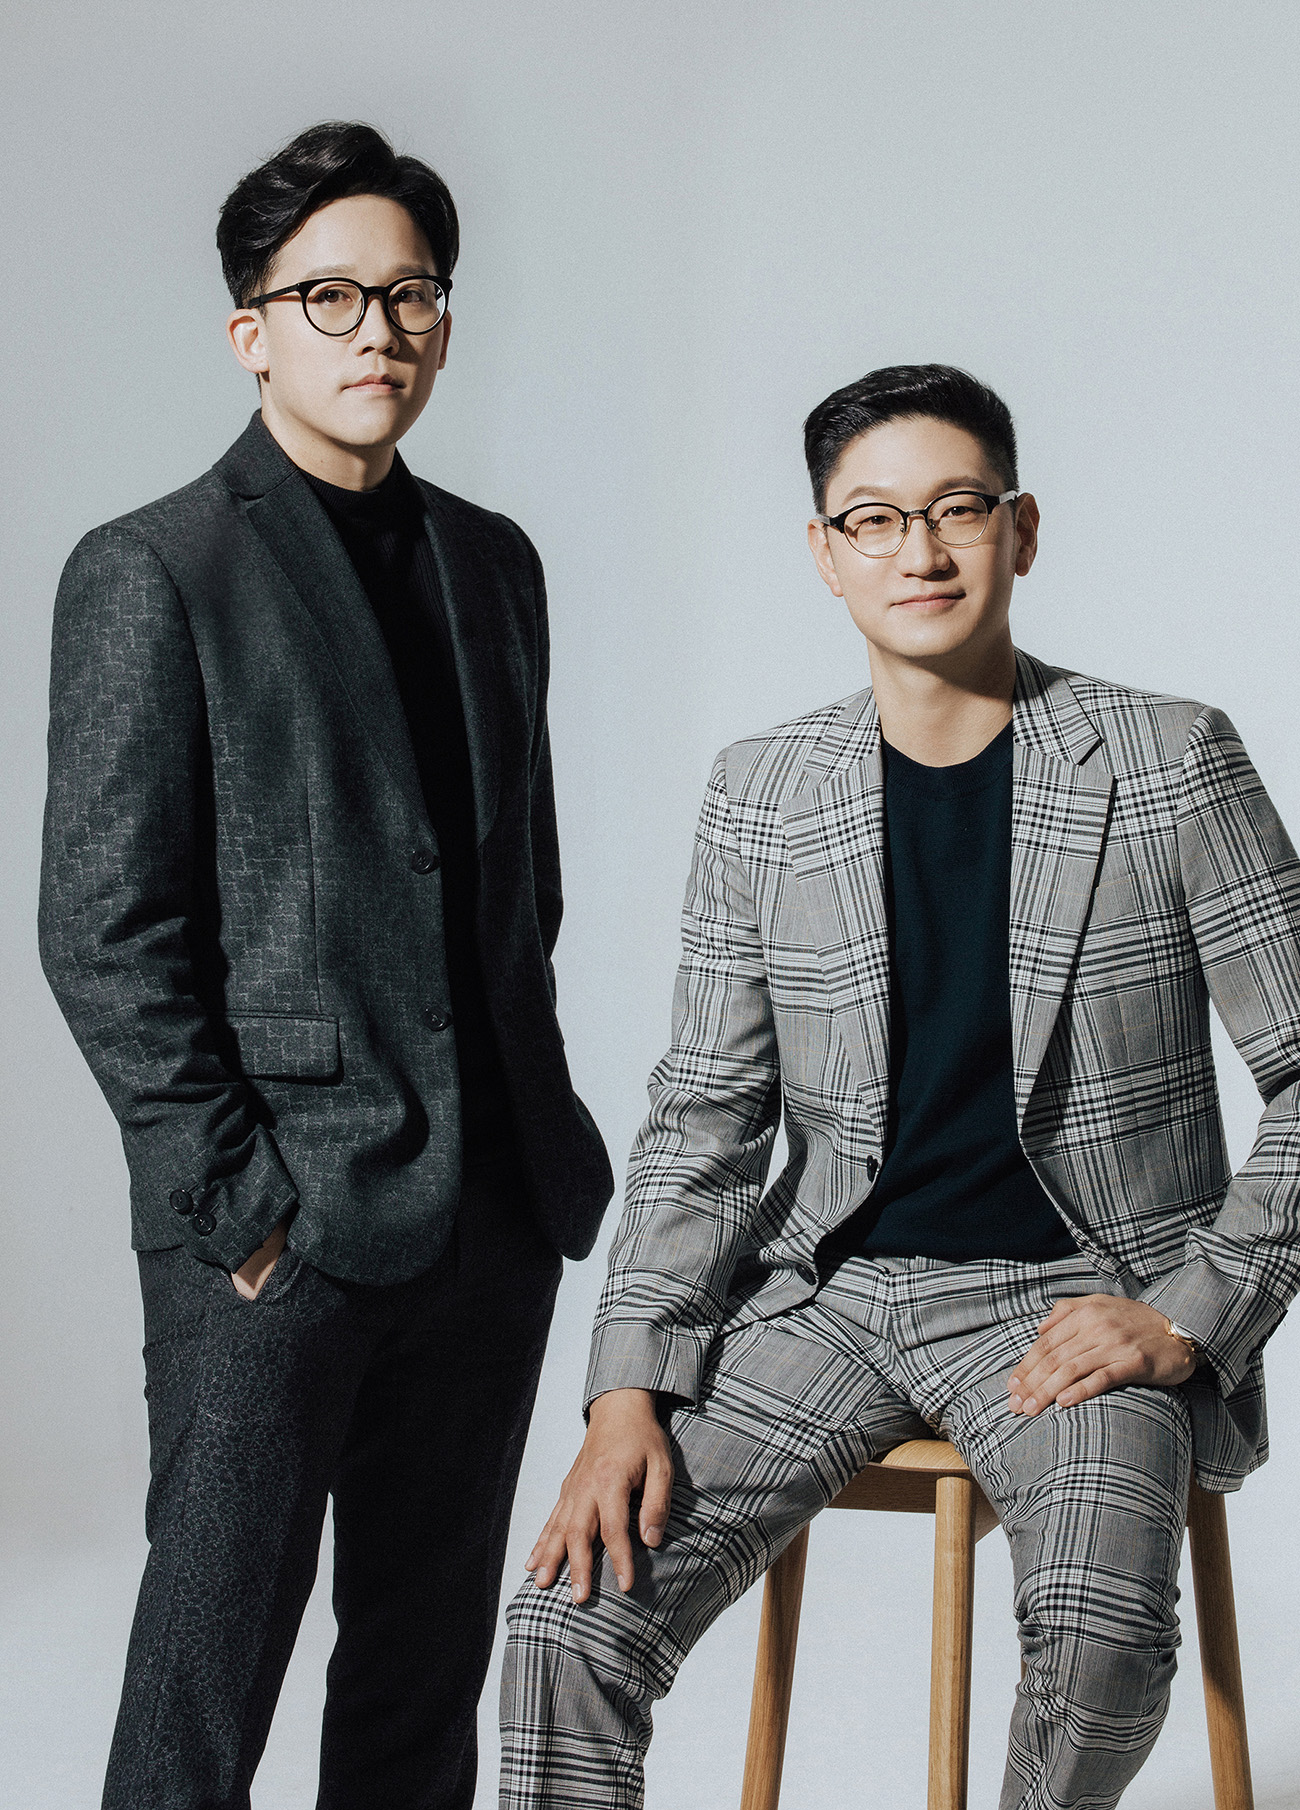 อีซองซู CEO และ ทักยองจุน COO คนปัจจุบันของ SM Entertainment